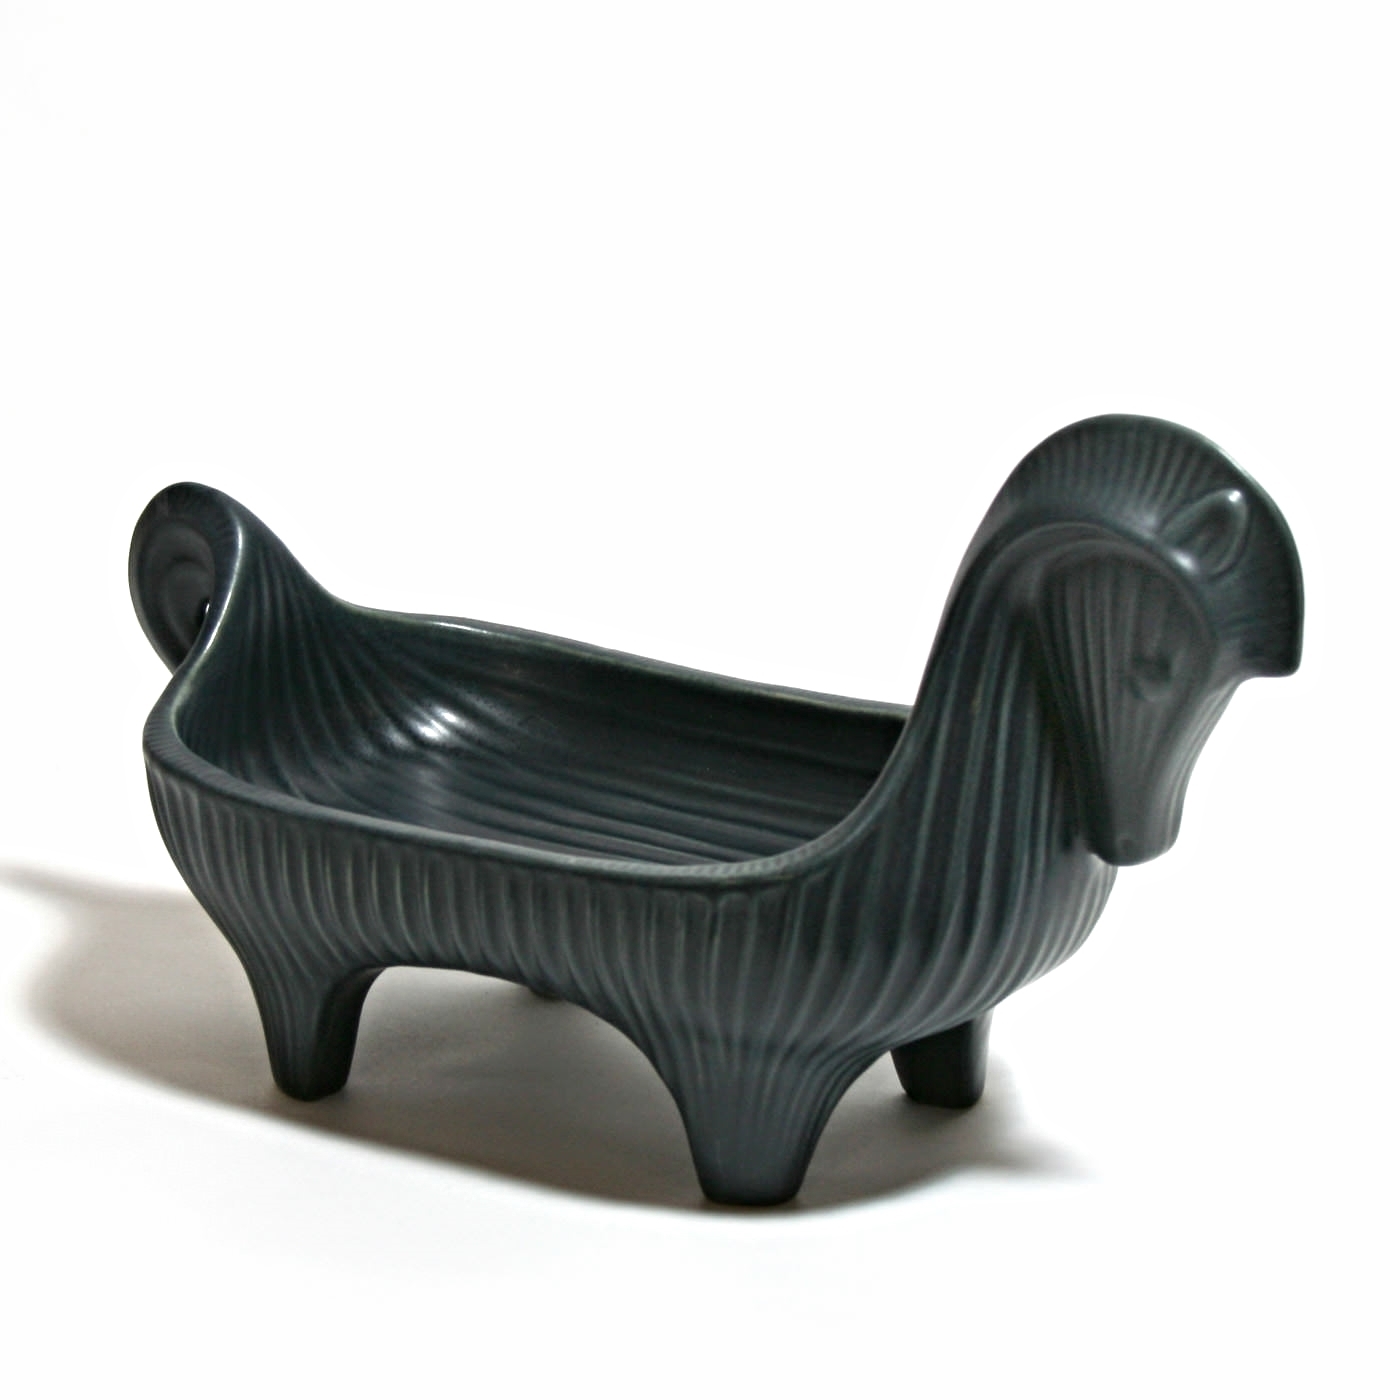 Jonathan Adler Ceramic Horse Tray $138